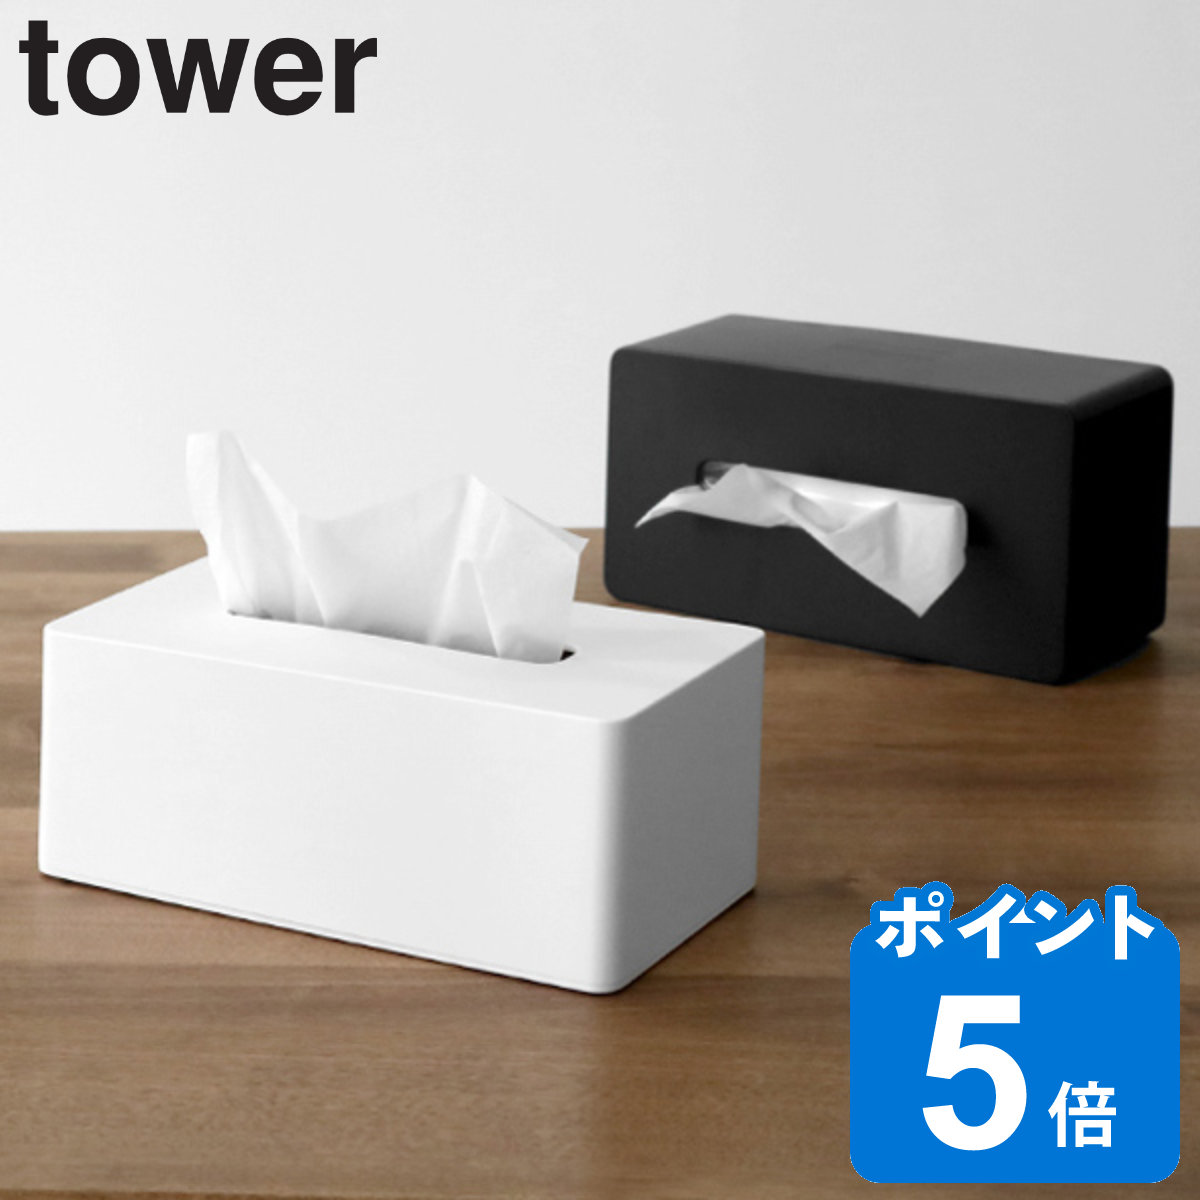 山崎実業 tower 厚型対応ティッシュケース タワー